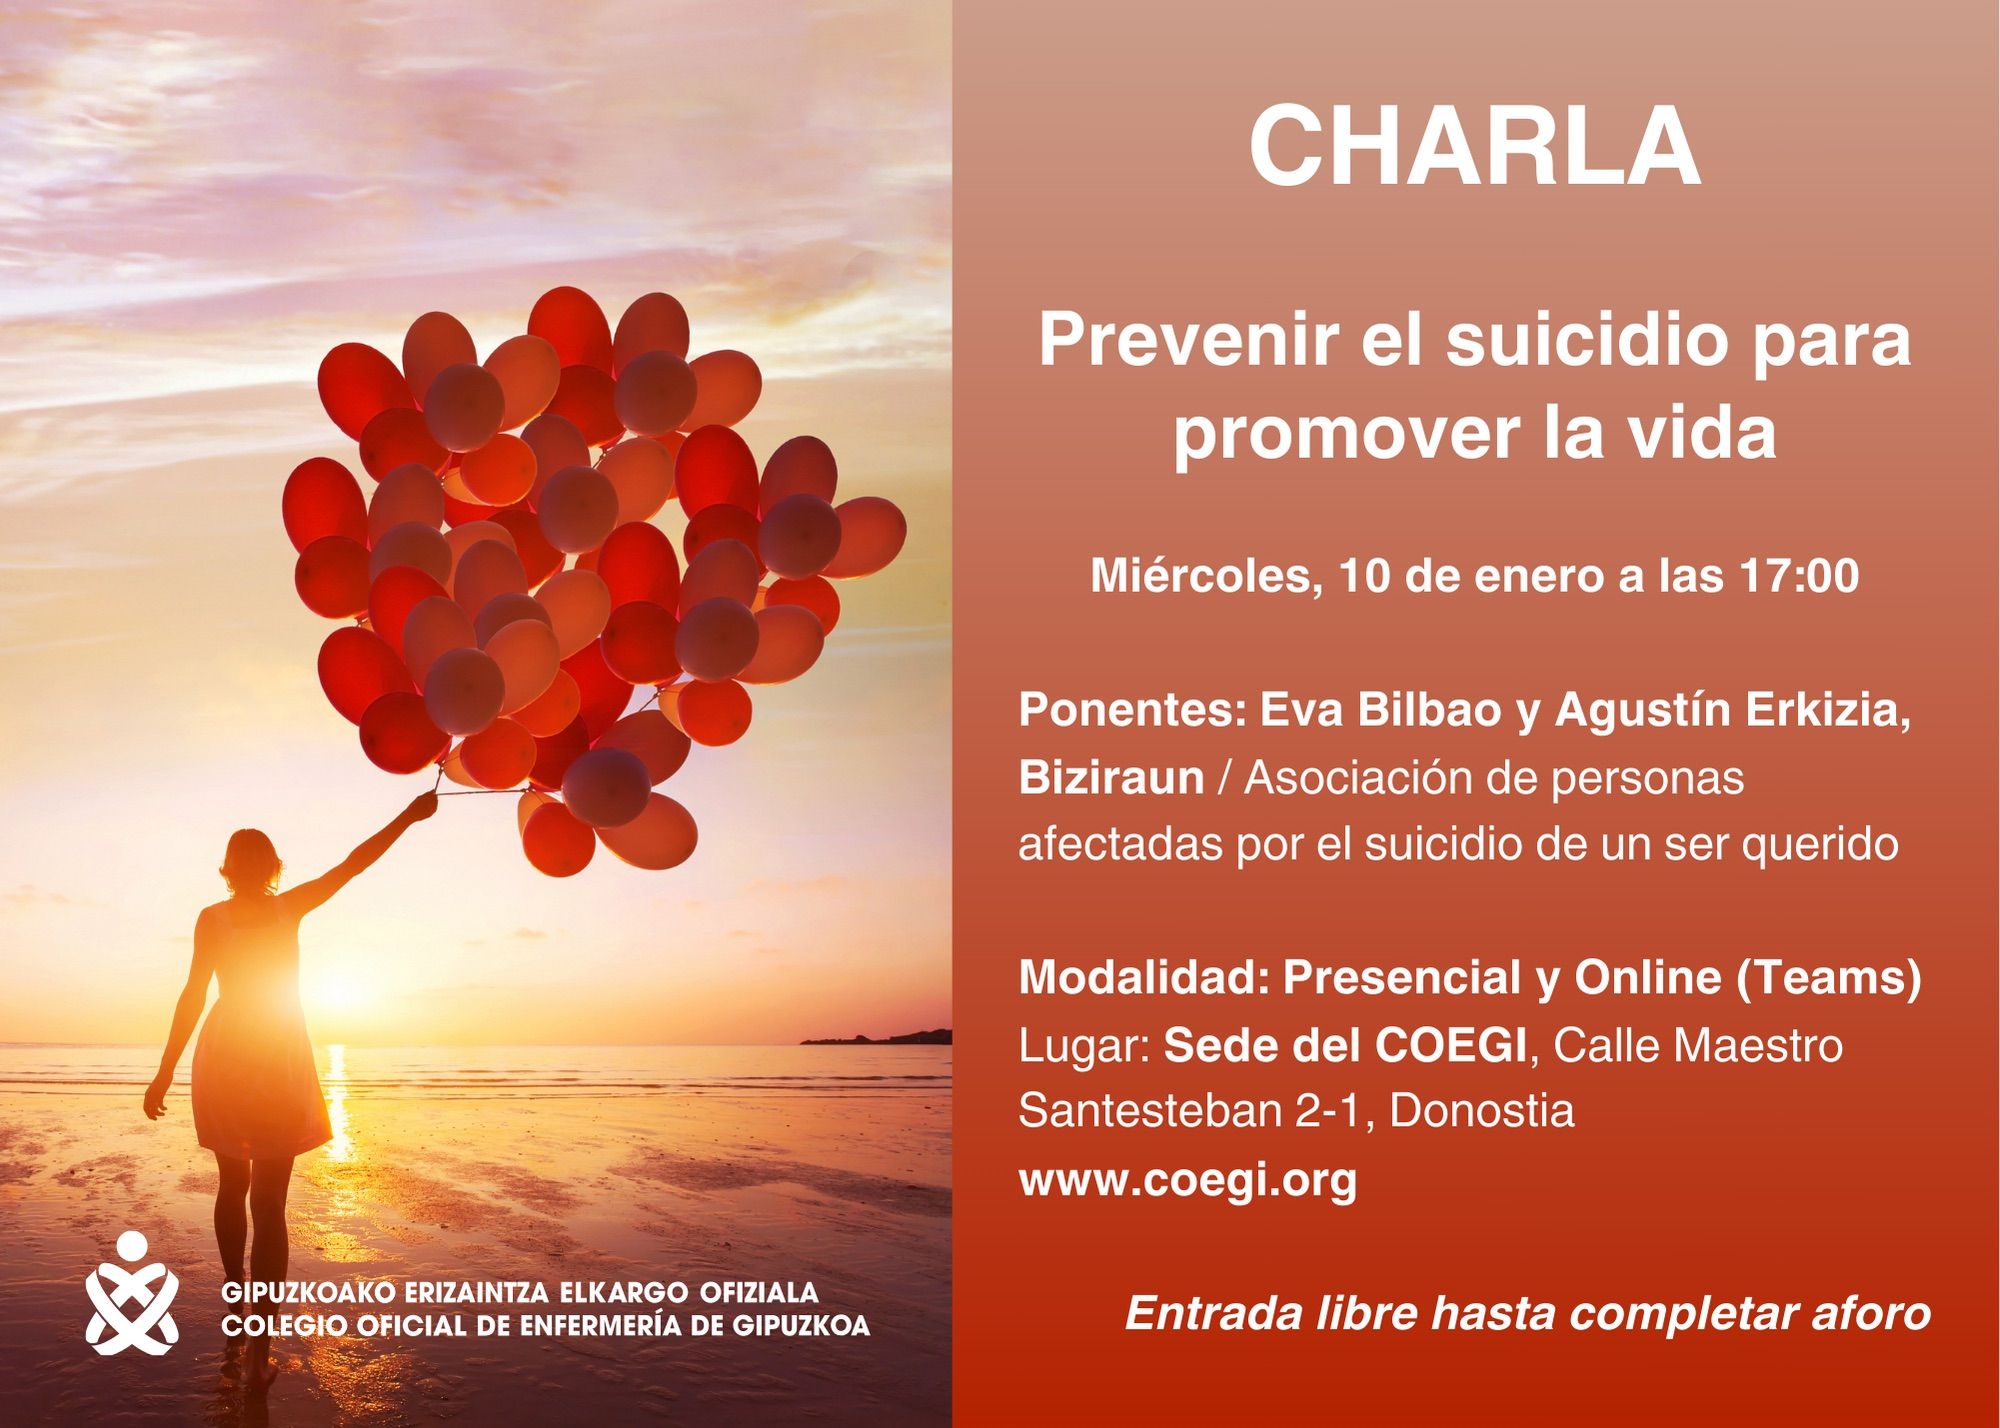 Eva Bilbao enfermera, fundadora de Biziraun: "El estigma de la muerte por suicidio en nuestra sociedad no facilita el proceso de duelo en las familias"